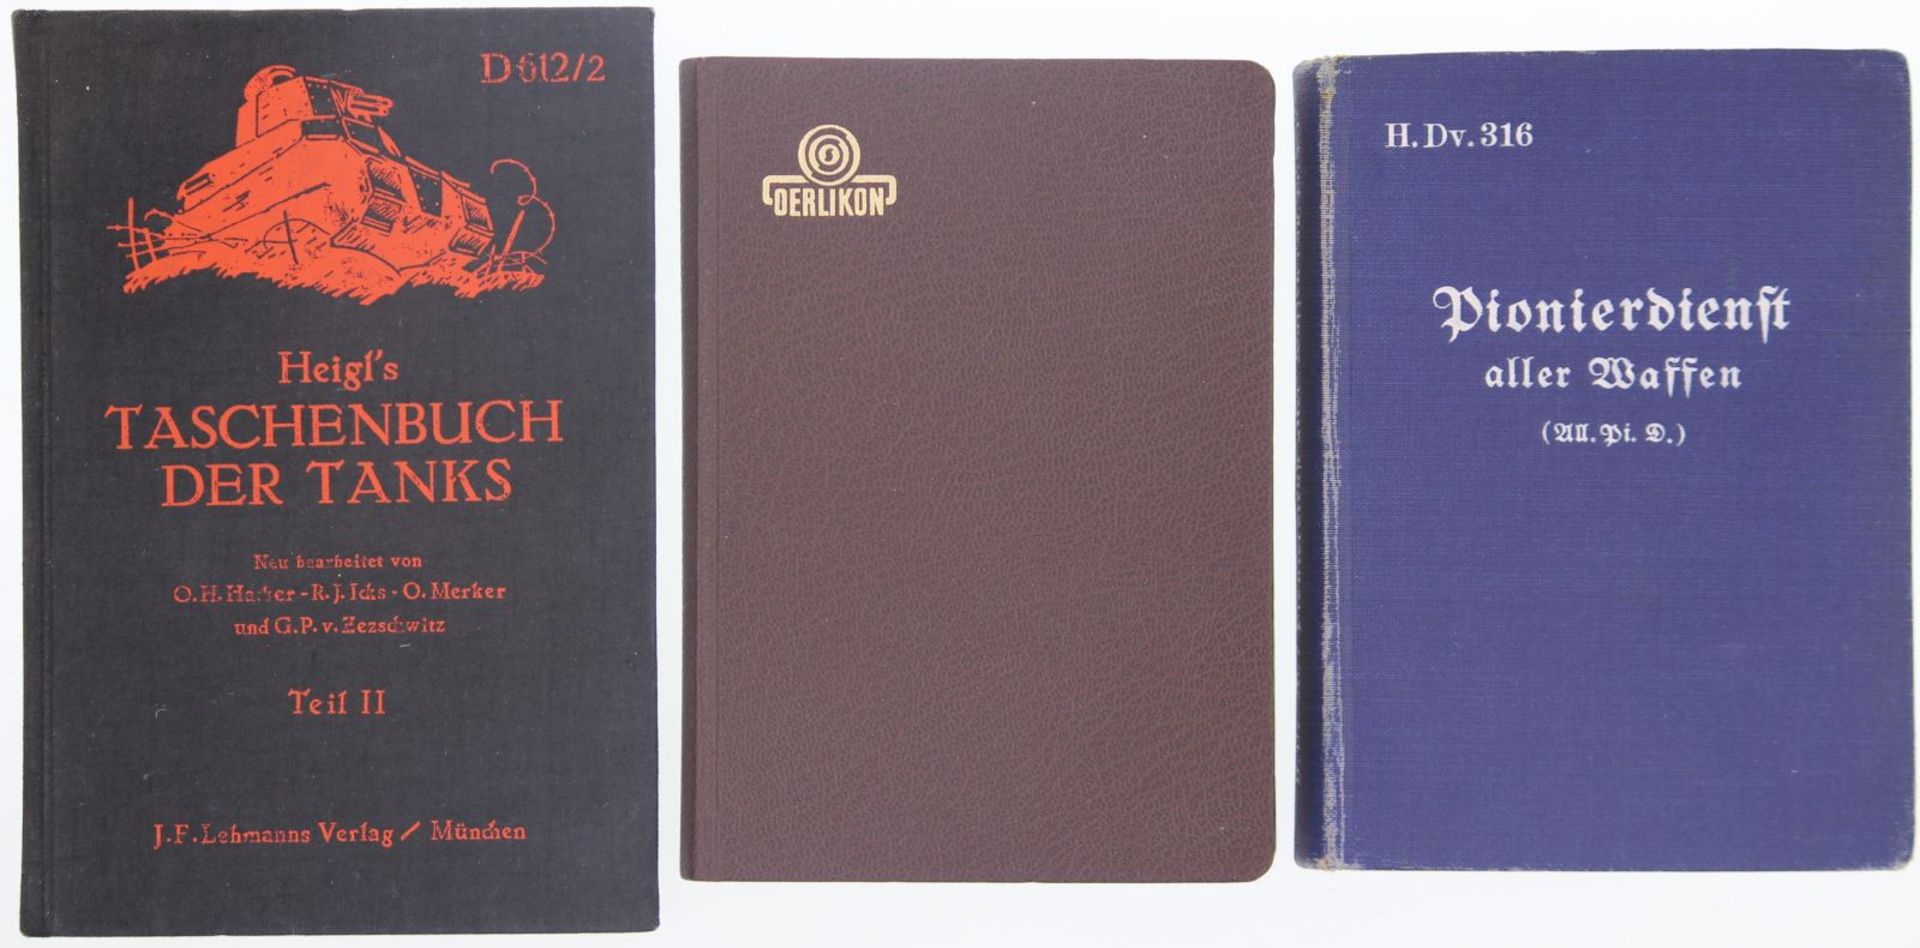 Konvolut von 3 Taschenbüchern / Reglementen. 1. Pioneerdienst aller Waffen, H.Dv. 316 1935, 2.